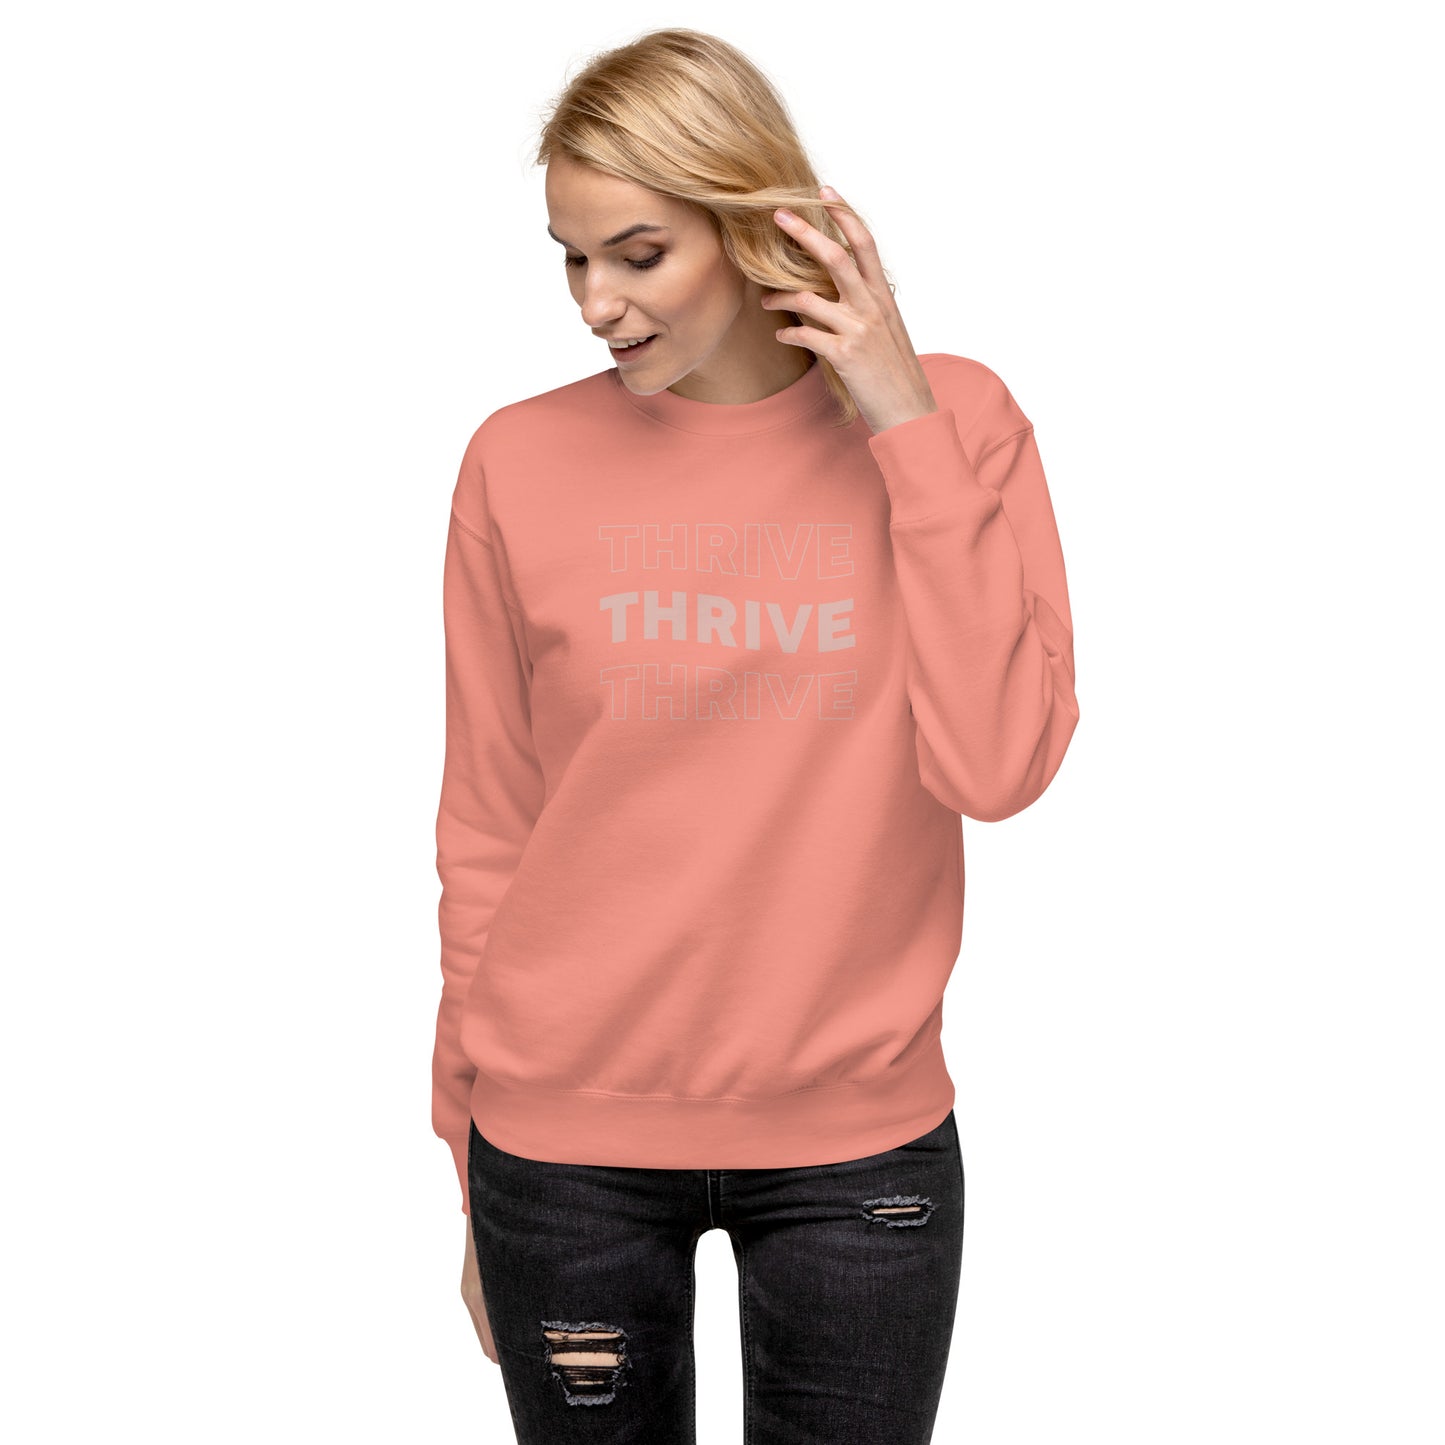 Unisex Premium Sweatshirt (Design 1)